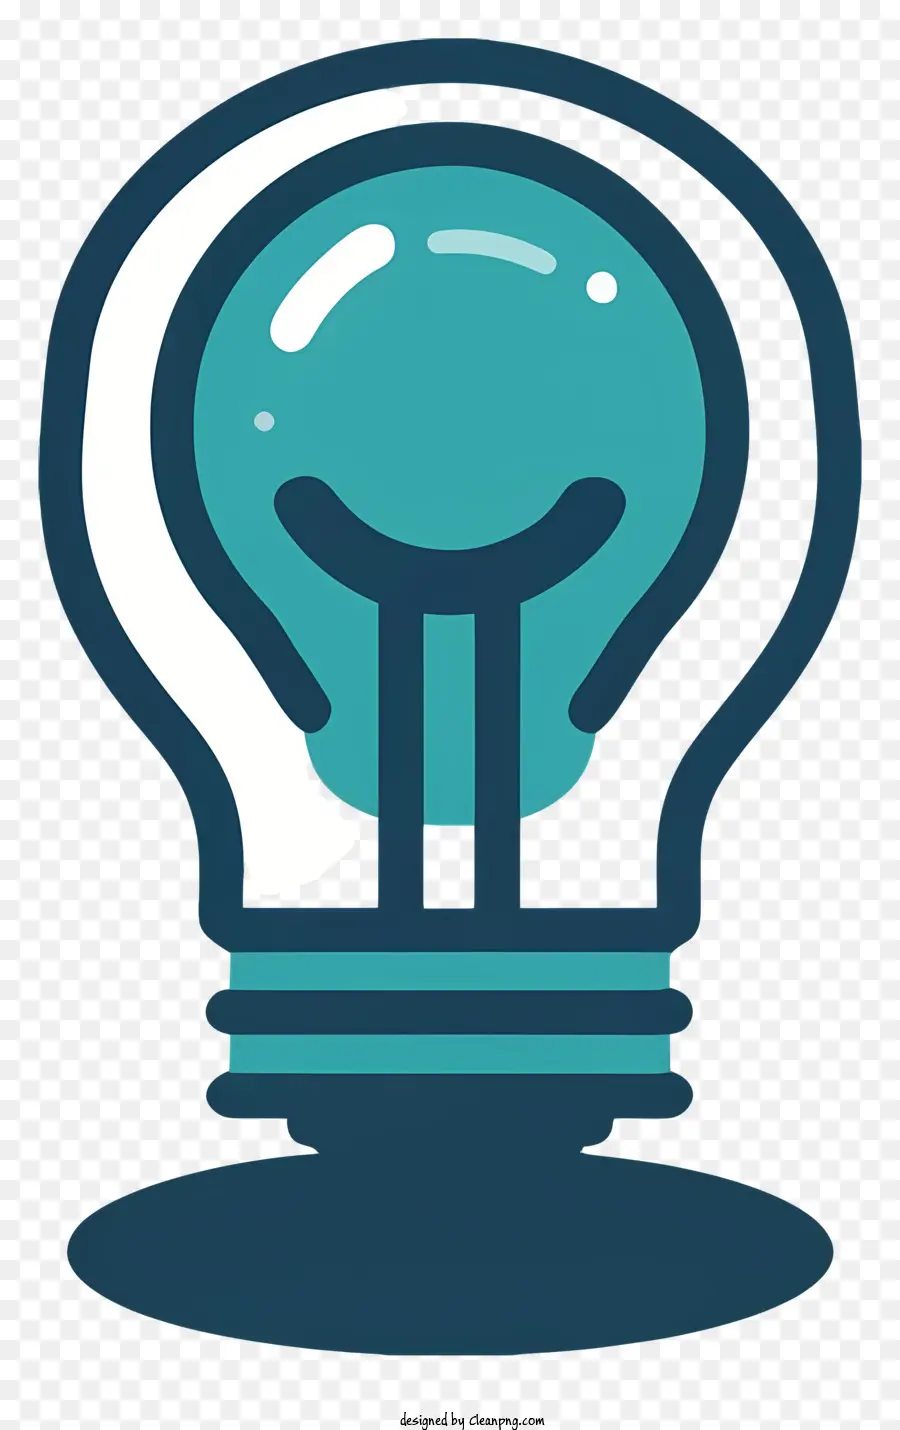 Bóng đèn ánh sáng với biểu tượng Eagle Biểu tượng Eagle trong bóng đèn Bóng đèn phản chiếu bóng đèn Bóng đèn Biểu tượng đại bàng trong logo - Bóng đèn với biểu tượng đại bàng phát ra ánh sáng xanh